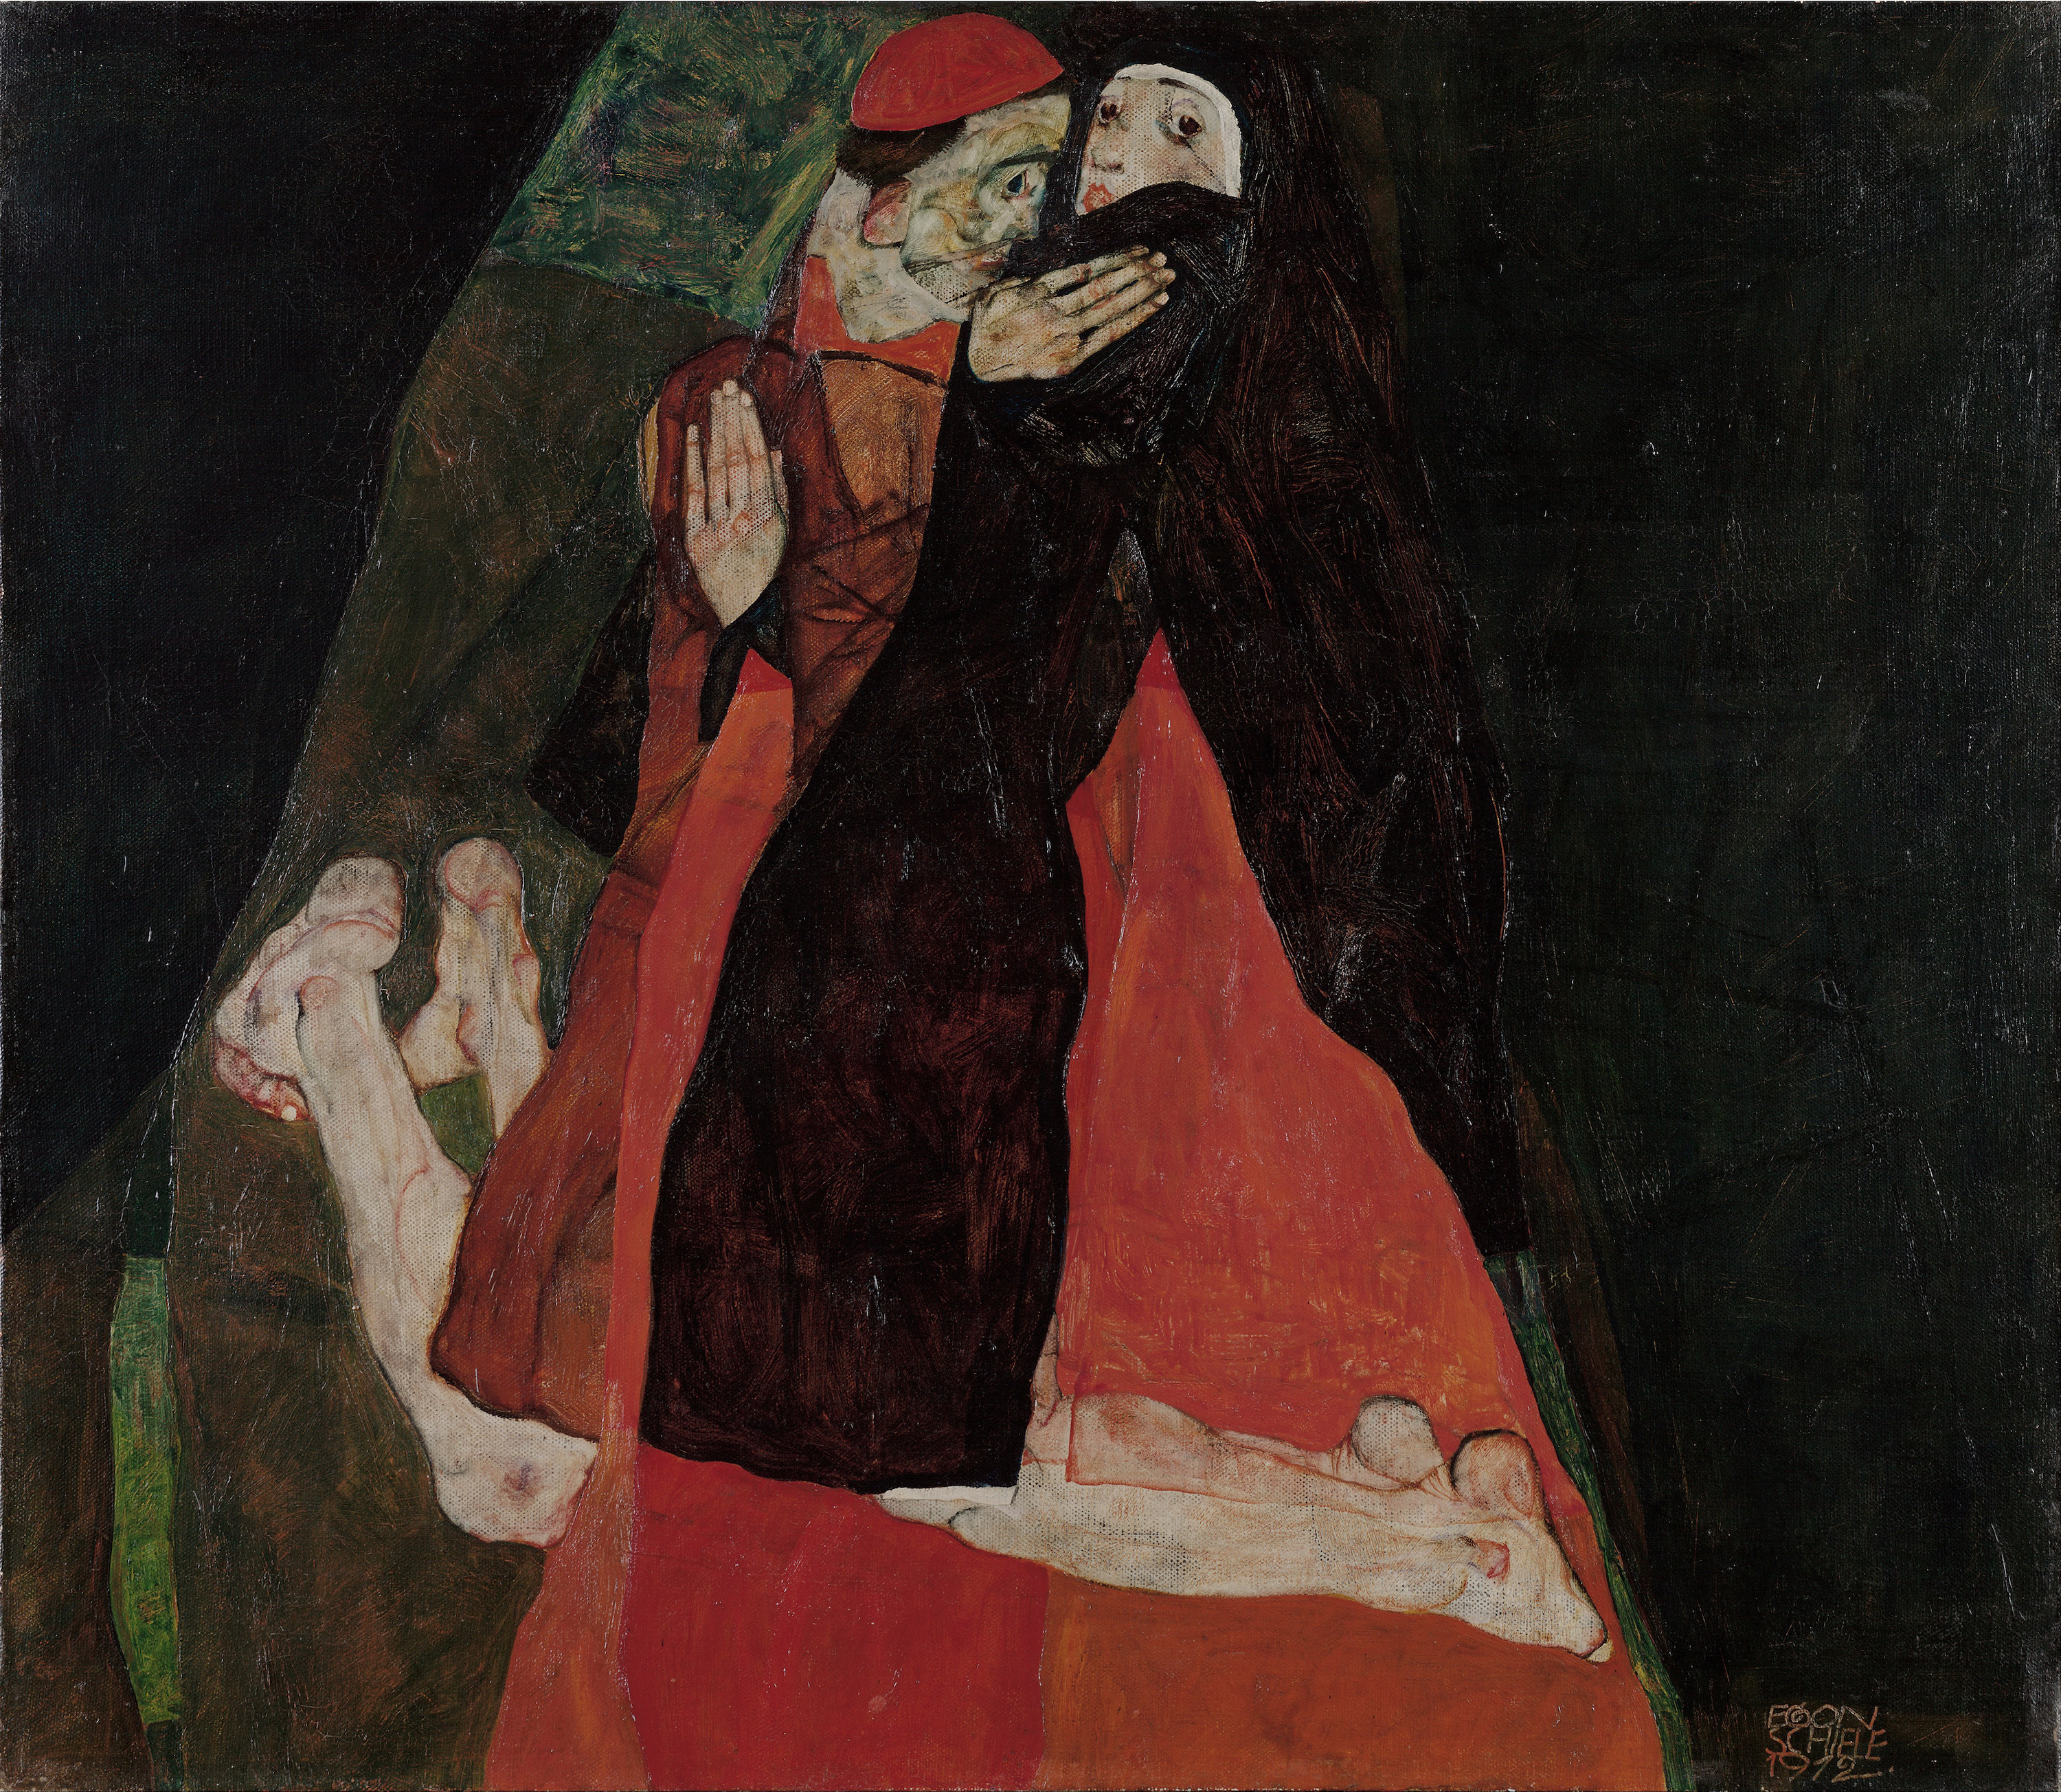 Cardinal și călugăriță (mângâiere) by Egon Schiele - 1912 - 80.5 x 70 cm 